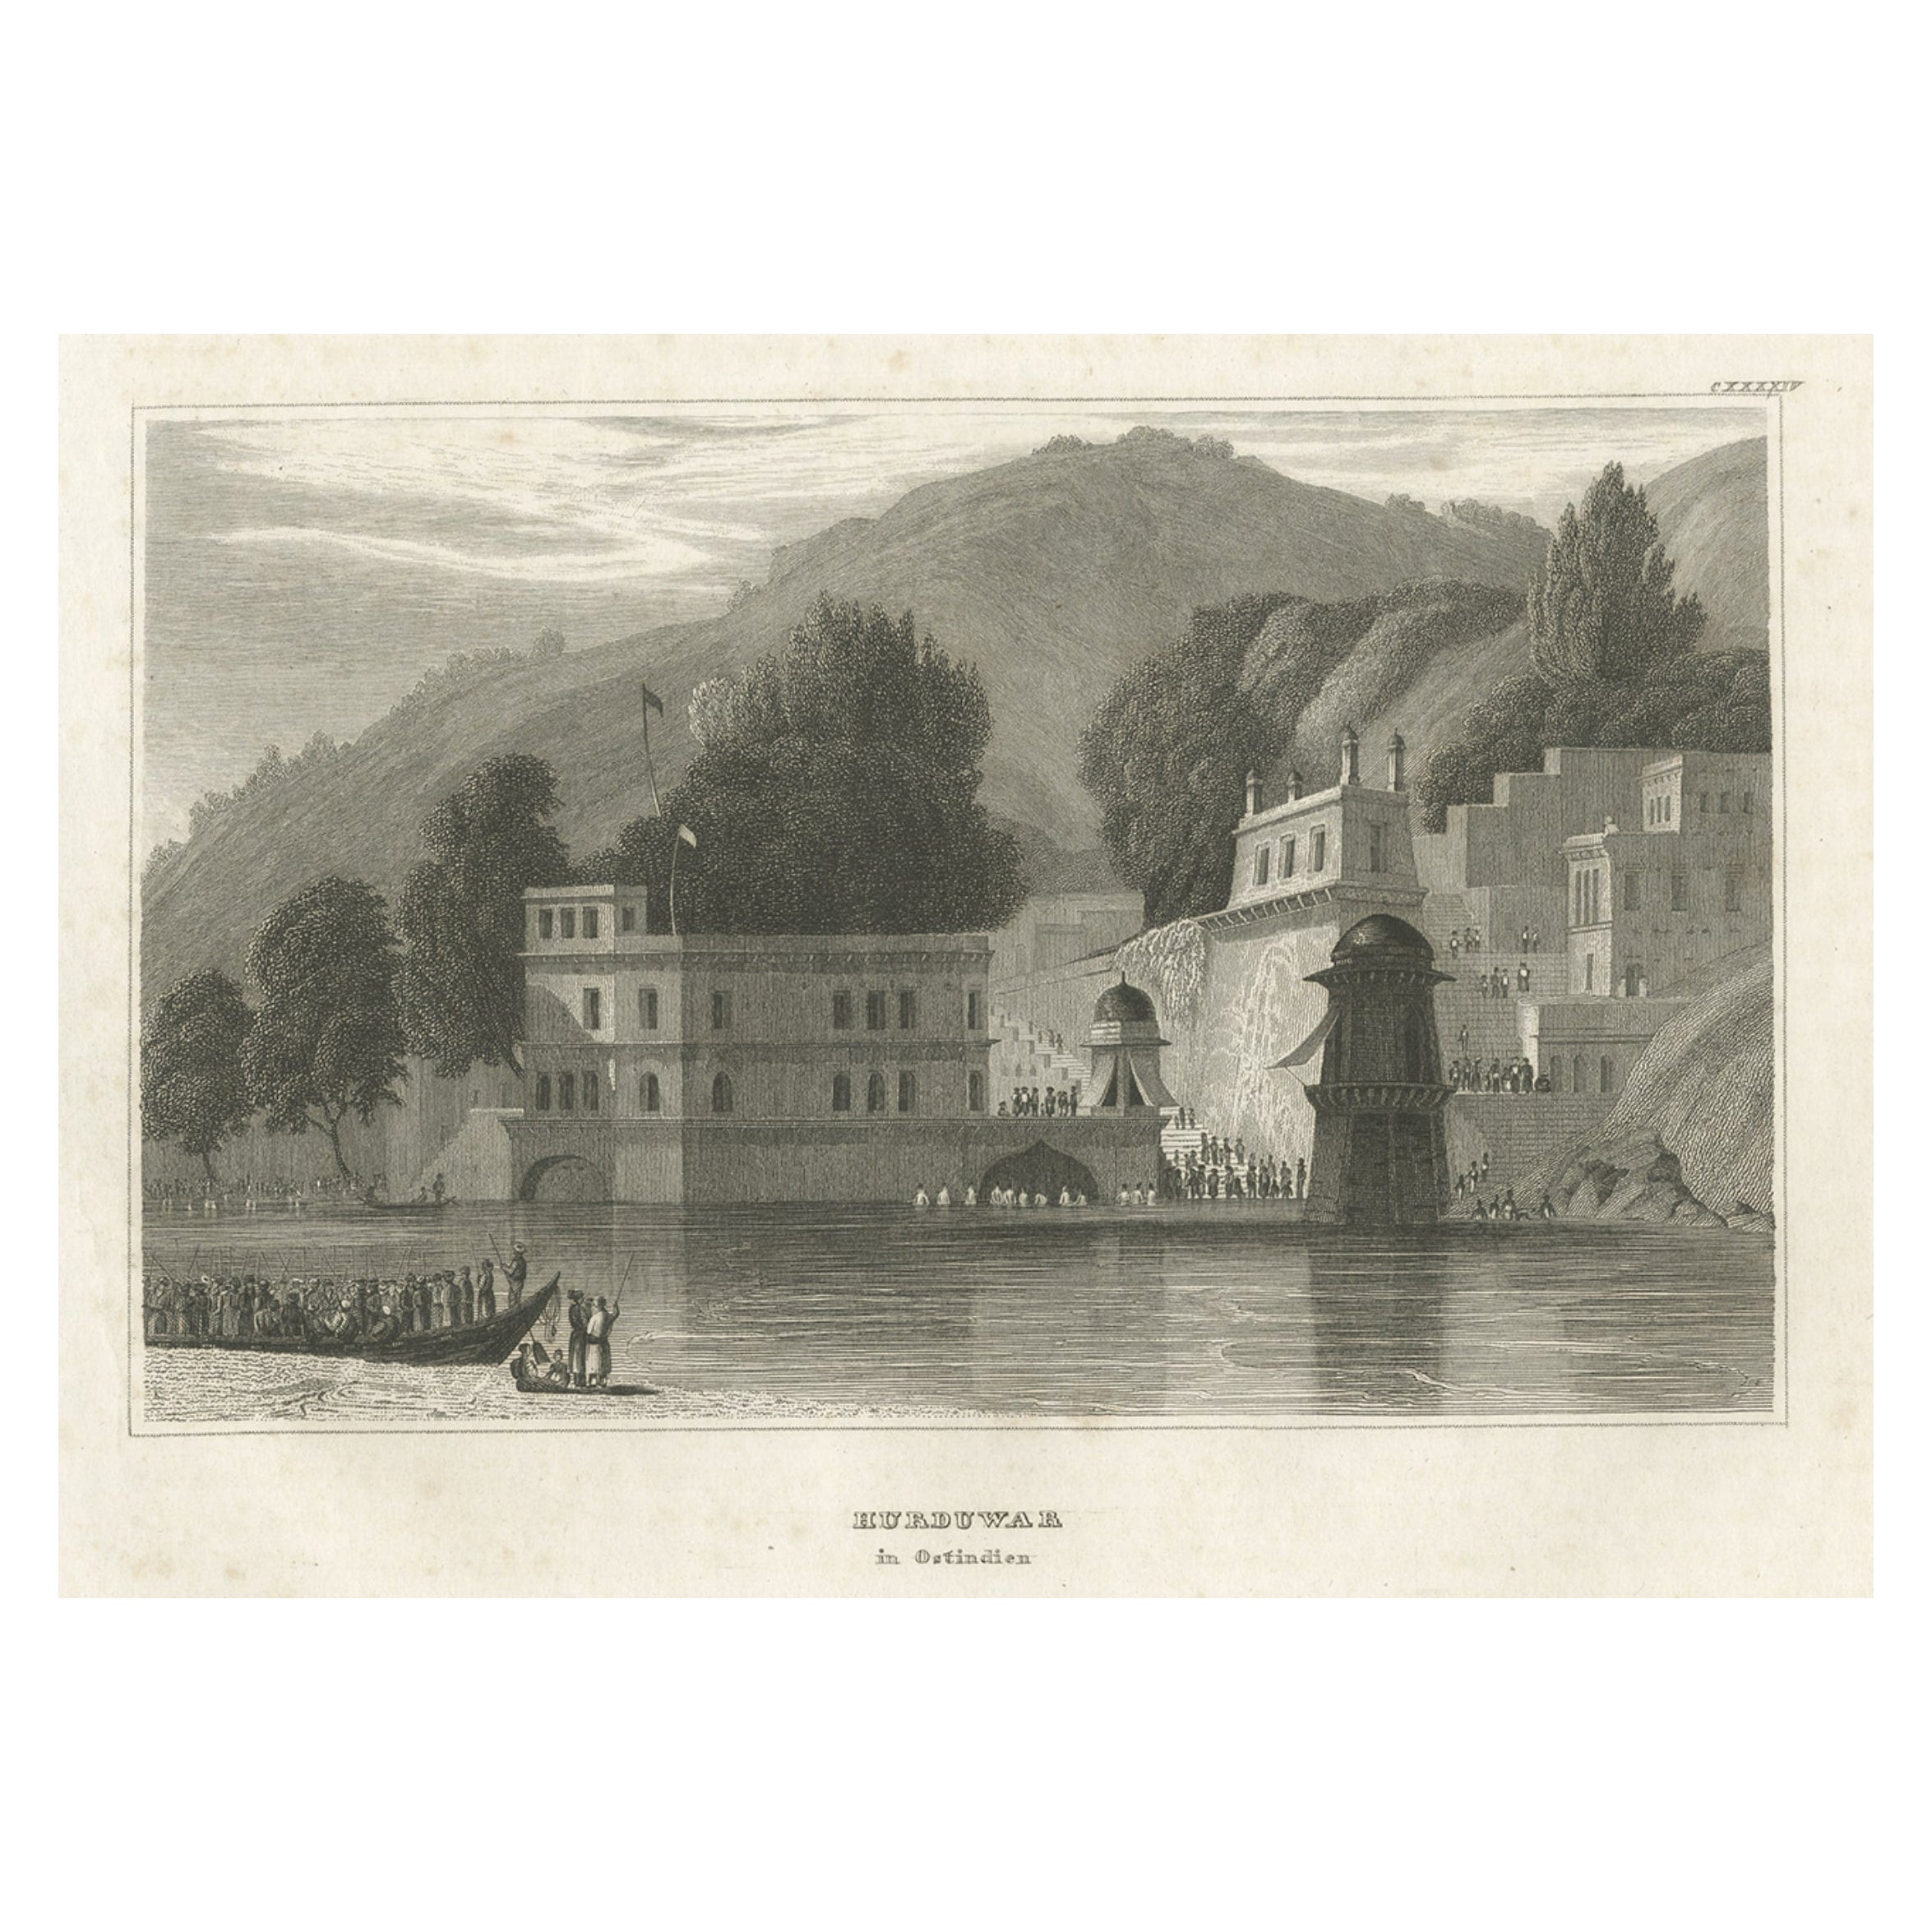 Antiker Druck der Haridwar-Stadt in Uttarakhand, Indien, 1837